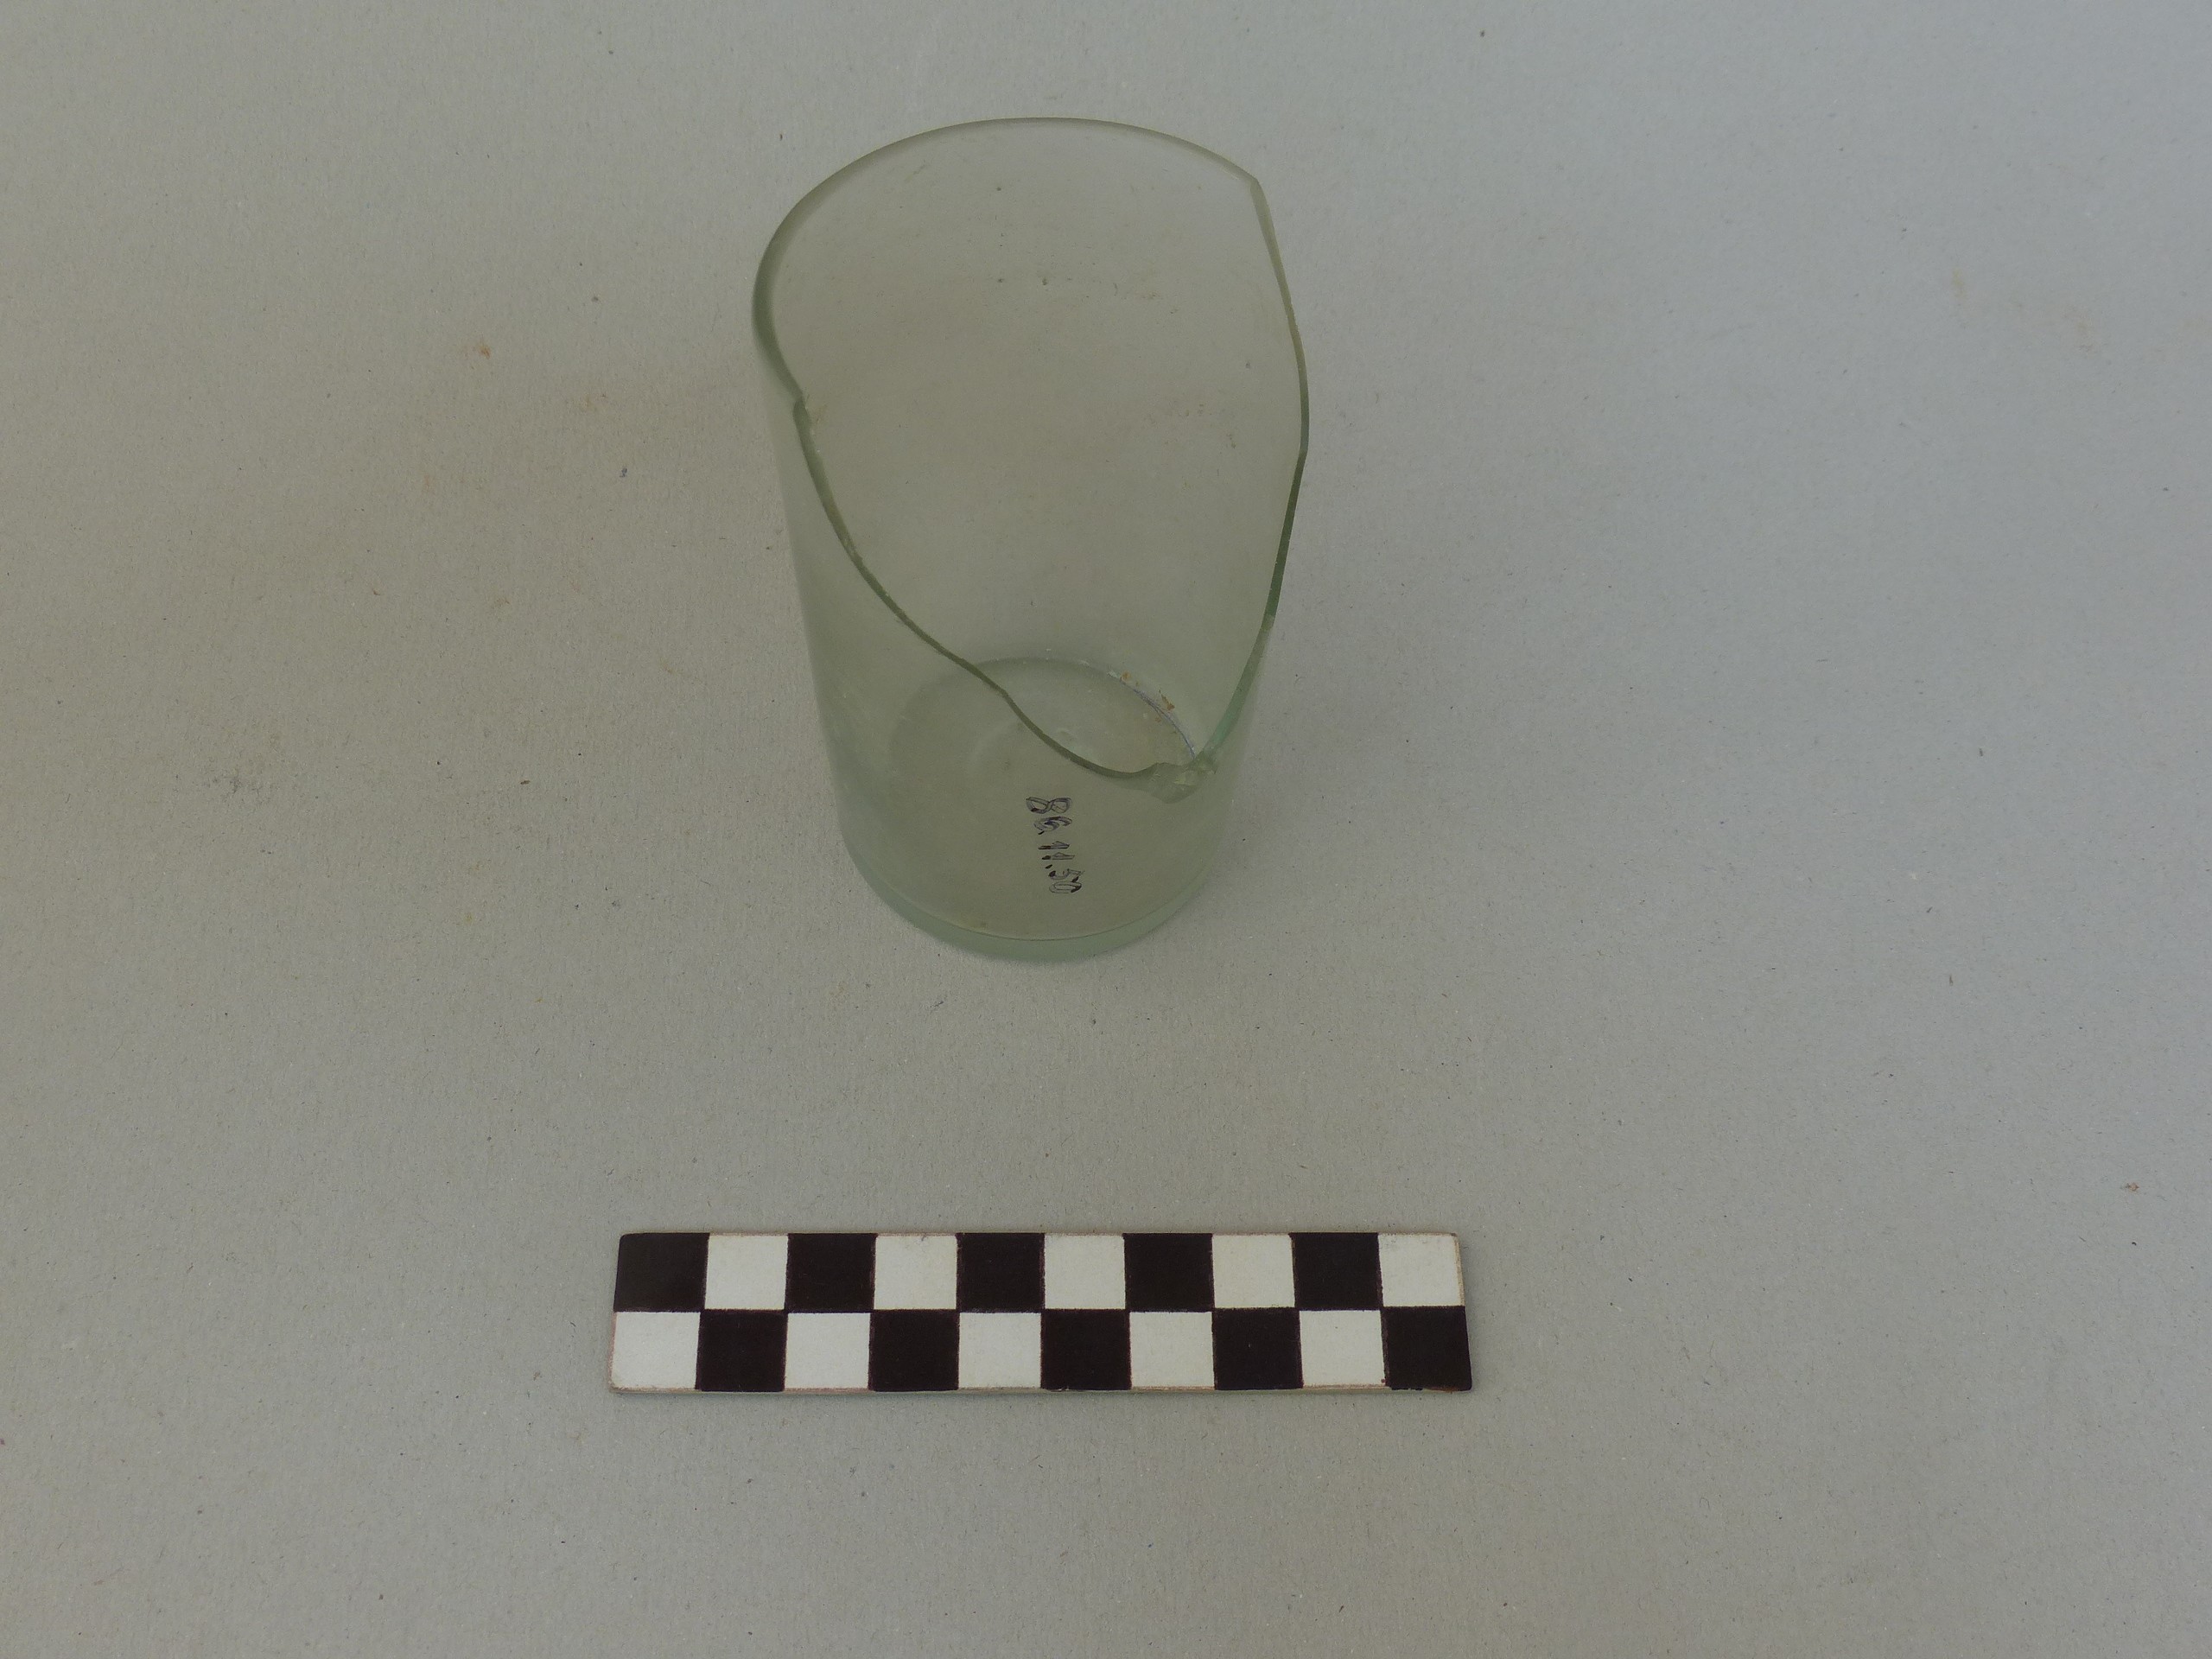 Üvegpohár töredéke (Tapolcai Városi Múzeum CC BY-NC-SA)